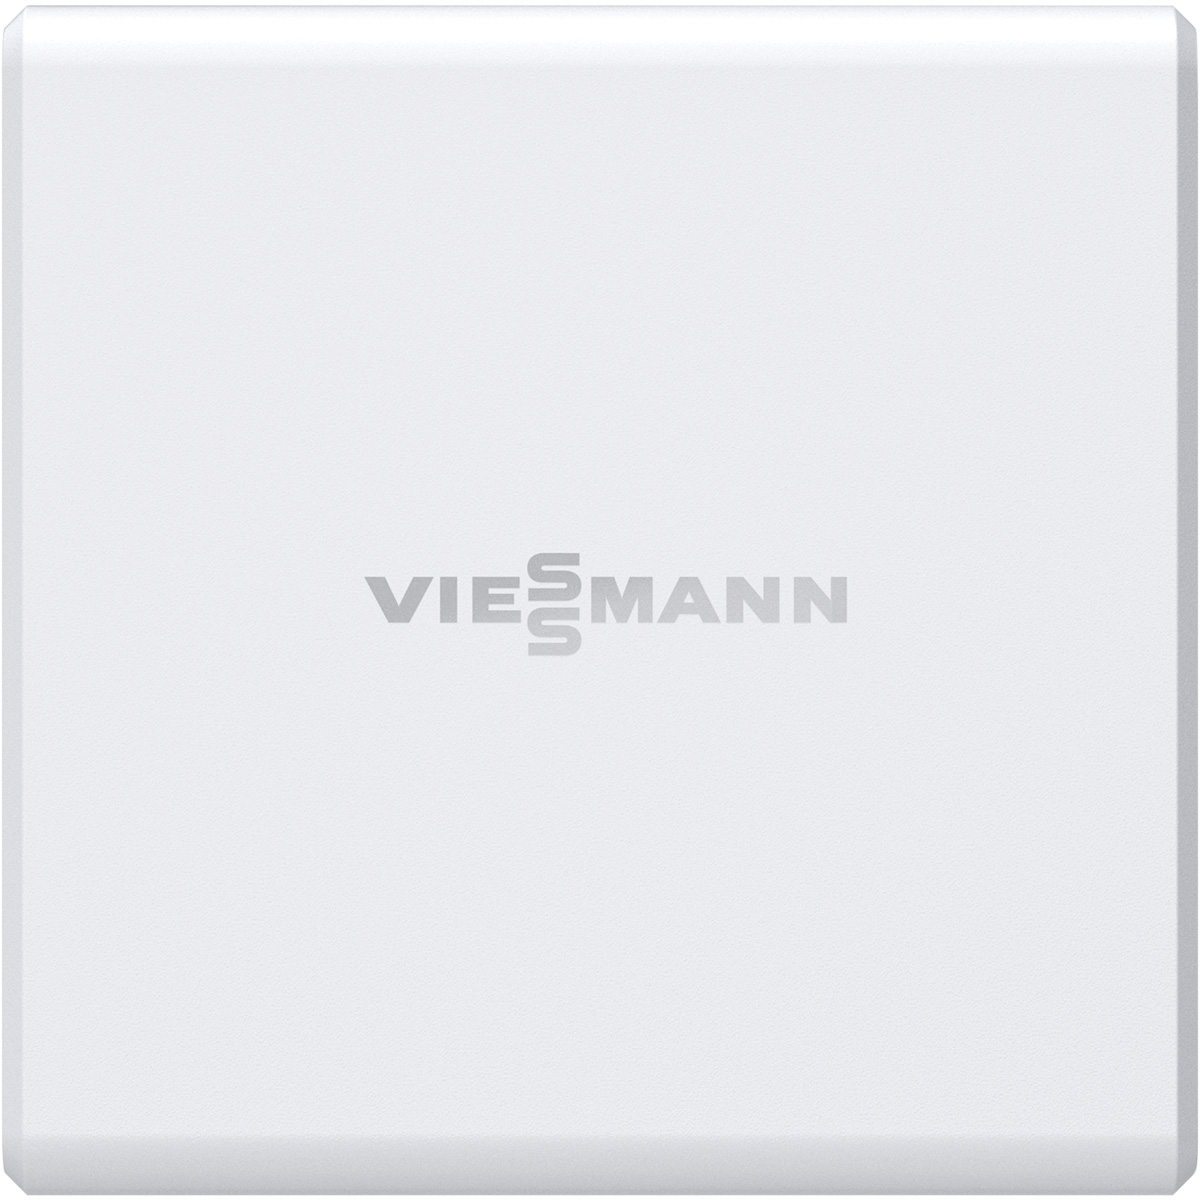 Viessmann GridBox 2.0